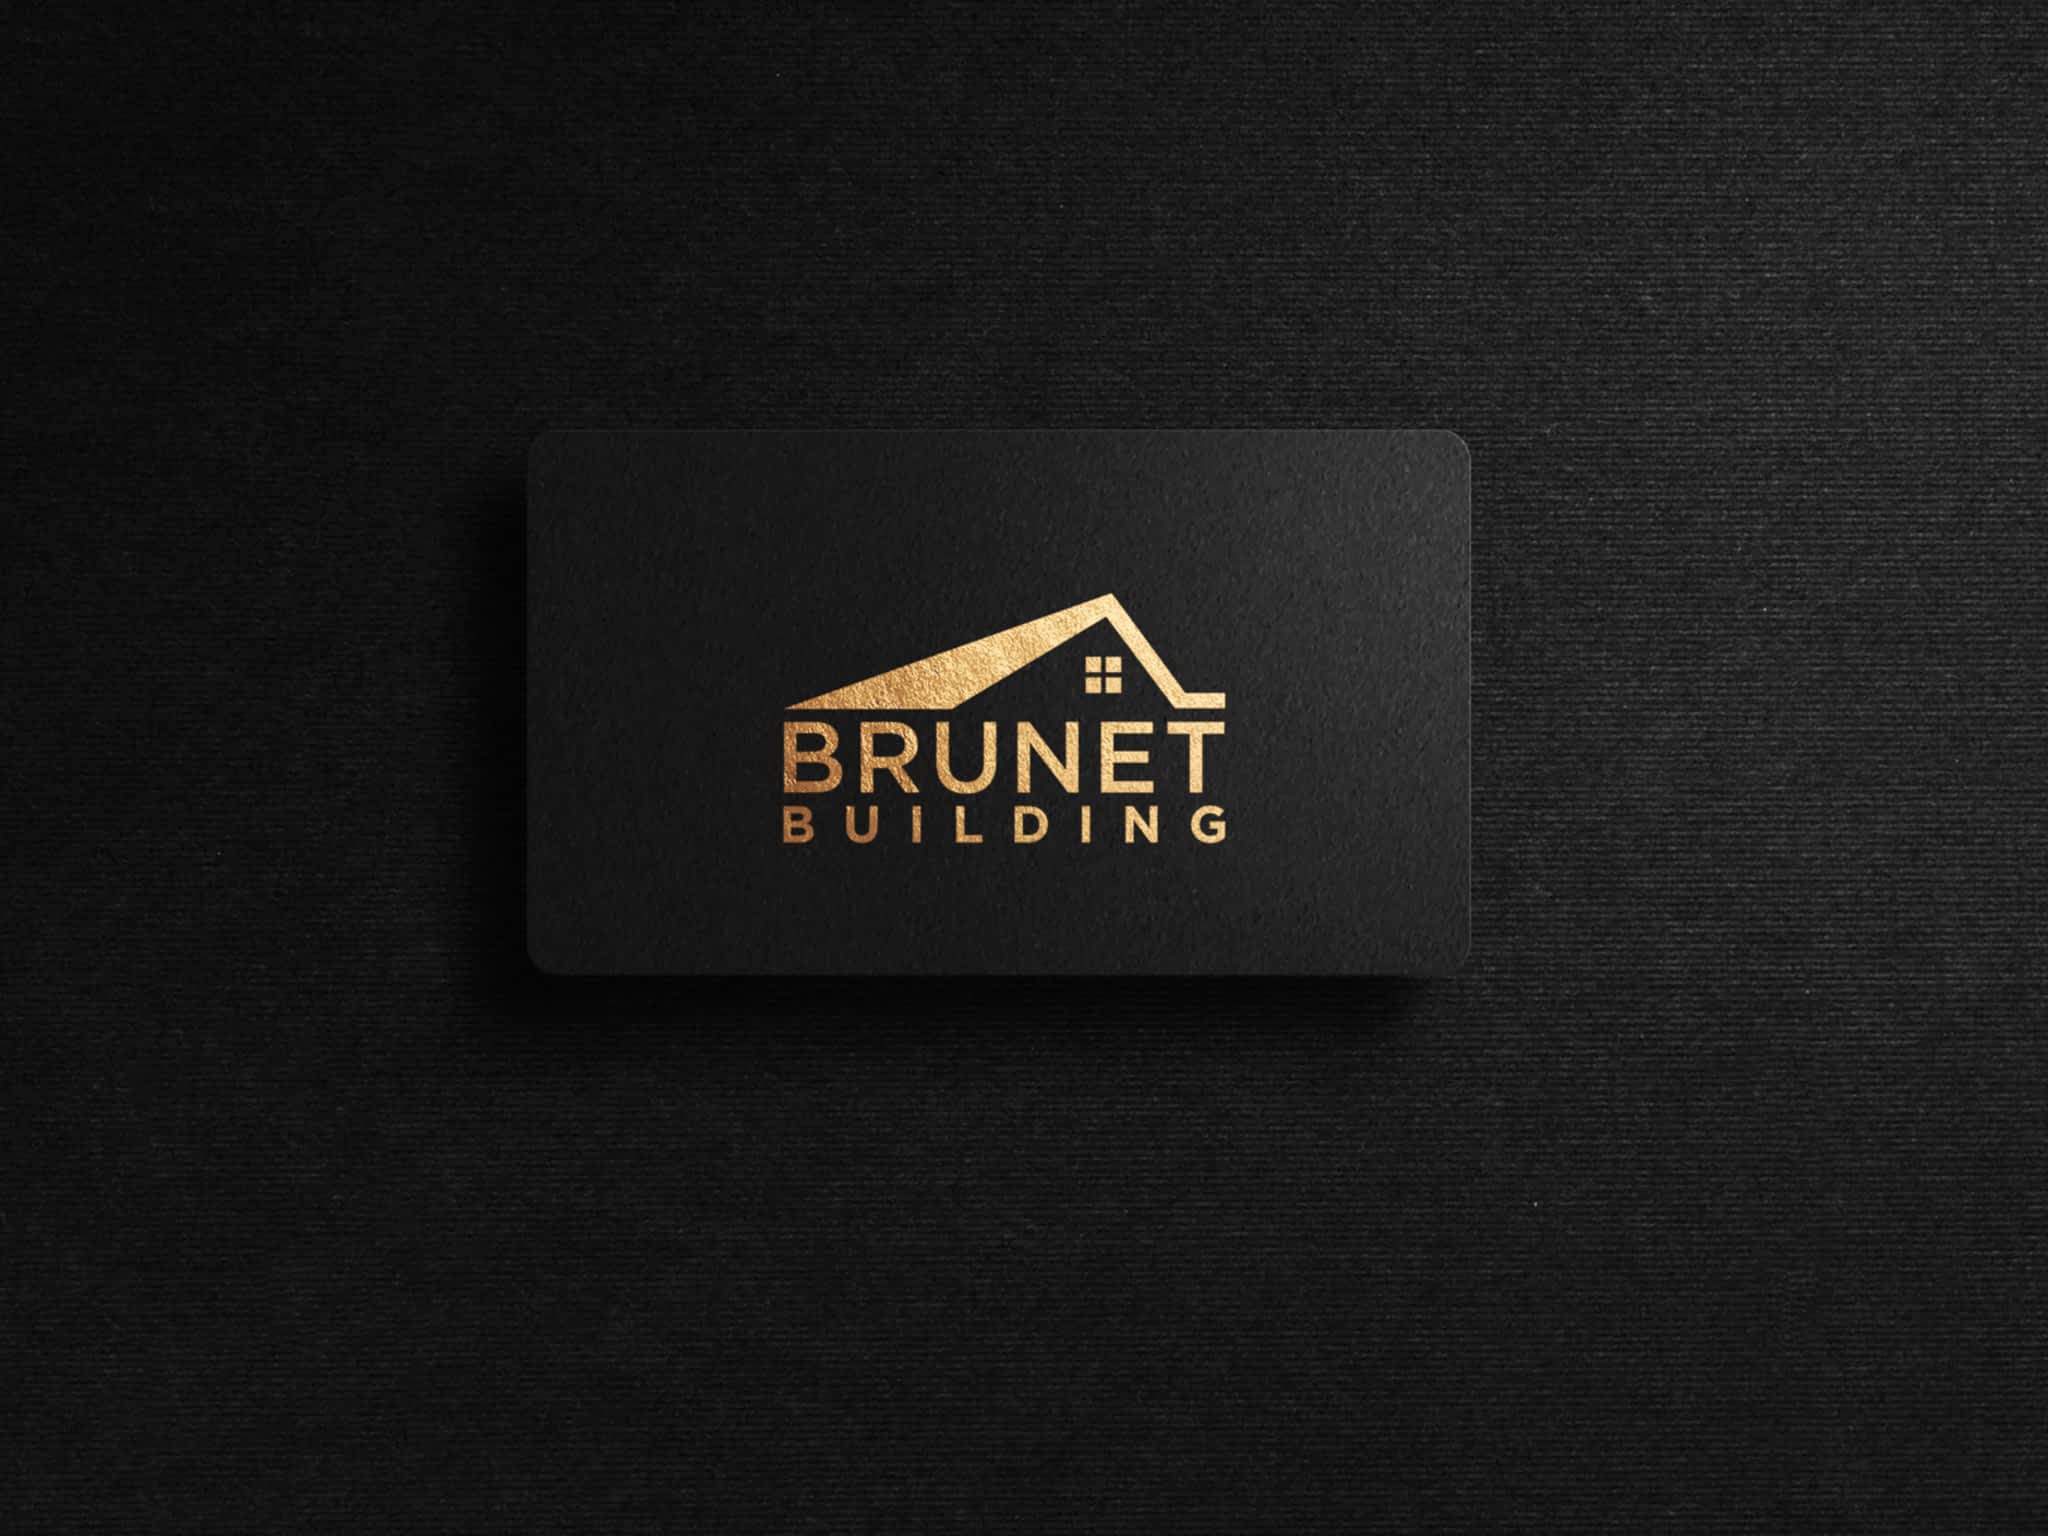 photo Brunet Building Ltd